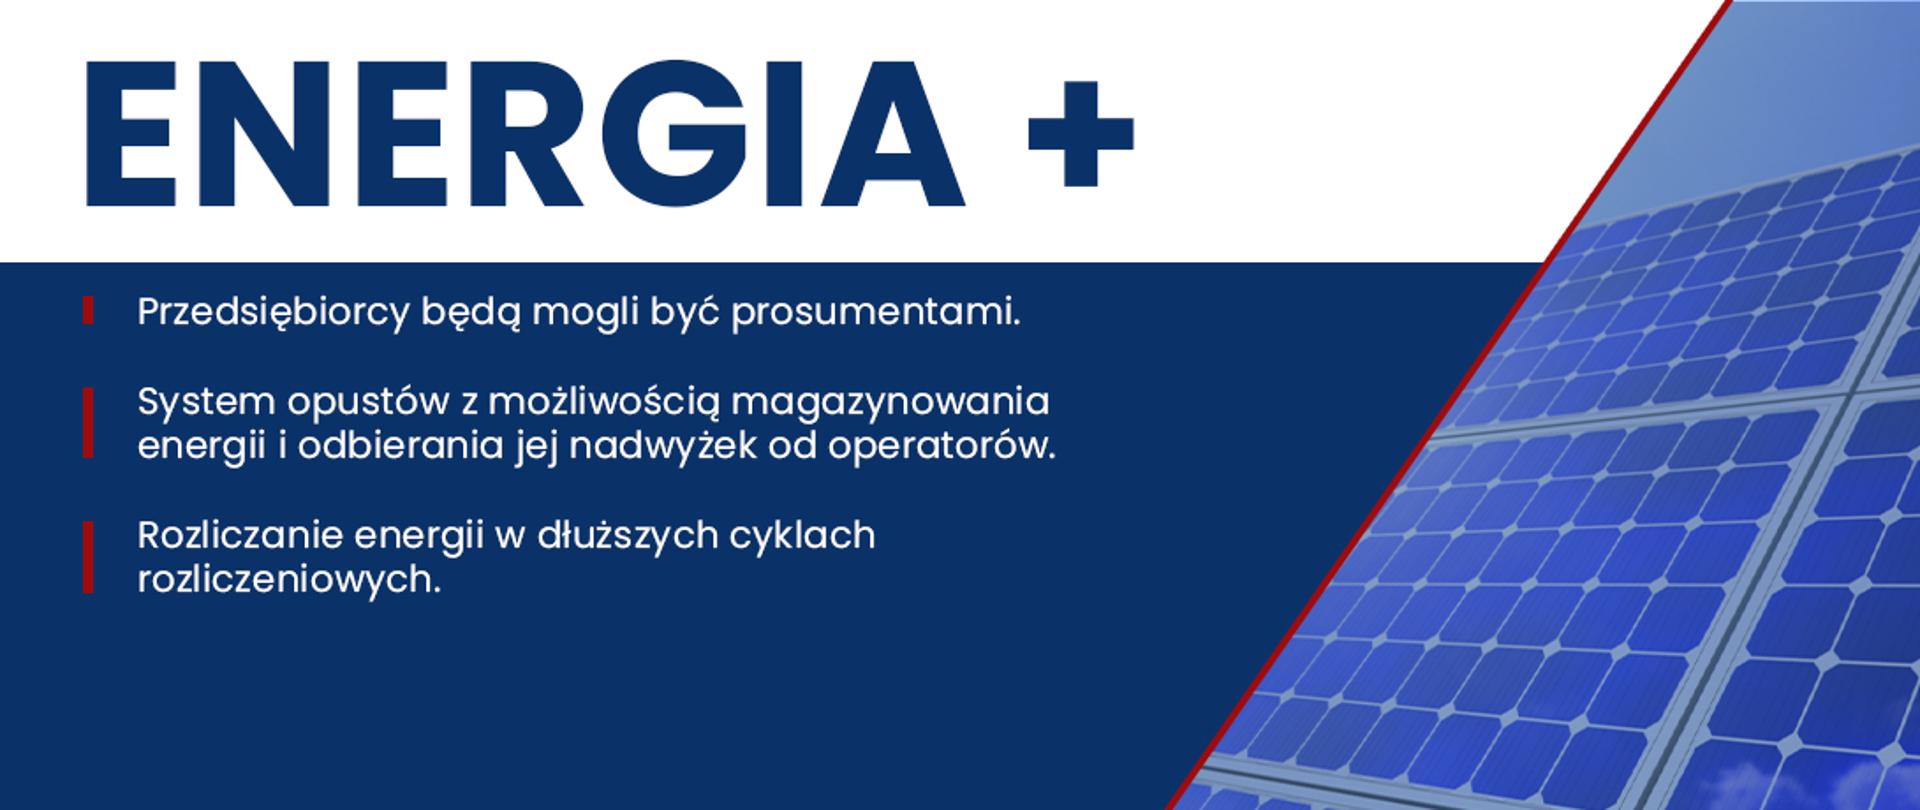 Grafika z napisem "Energia+" i zdjęciem panelu słonecznego.